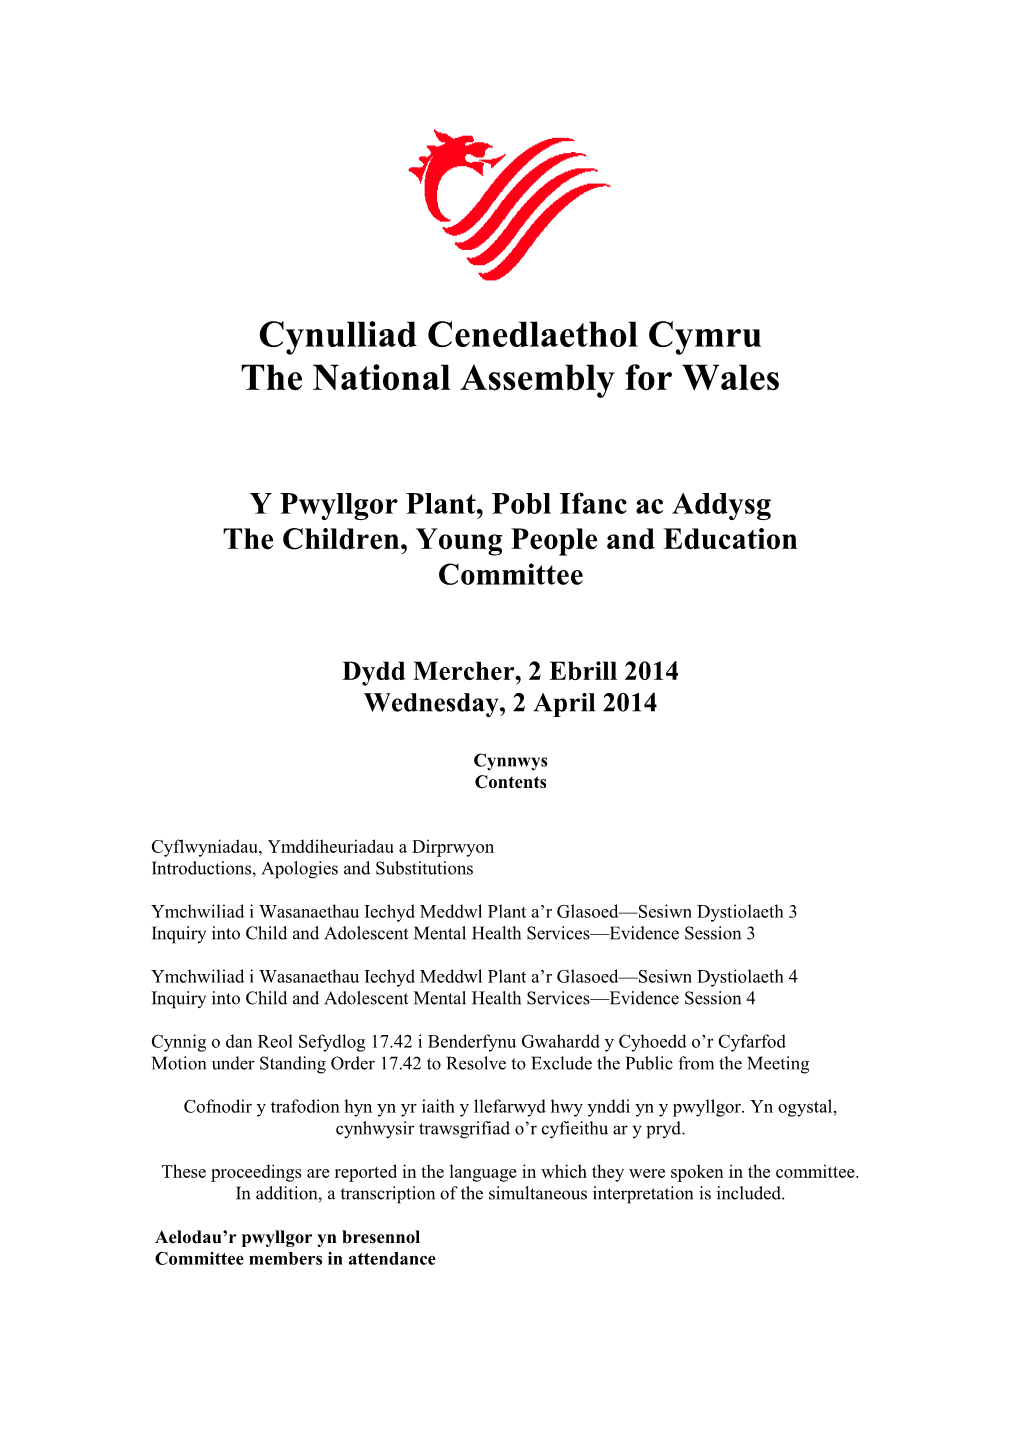 Cynulliad Cenedlaethol Cymru the National Assembly for Wales